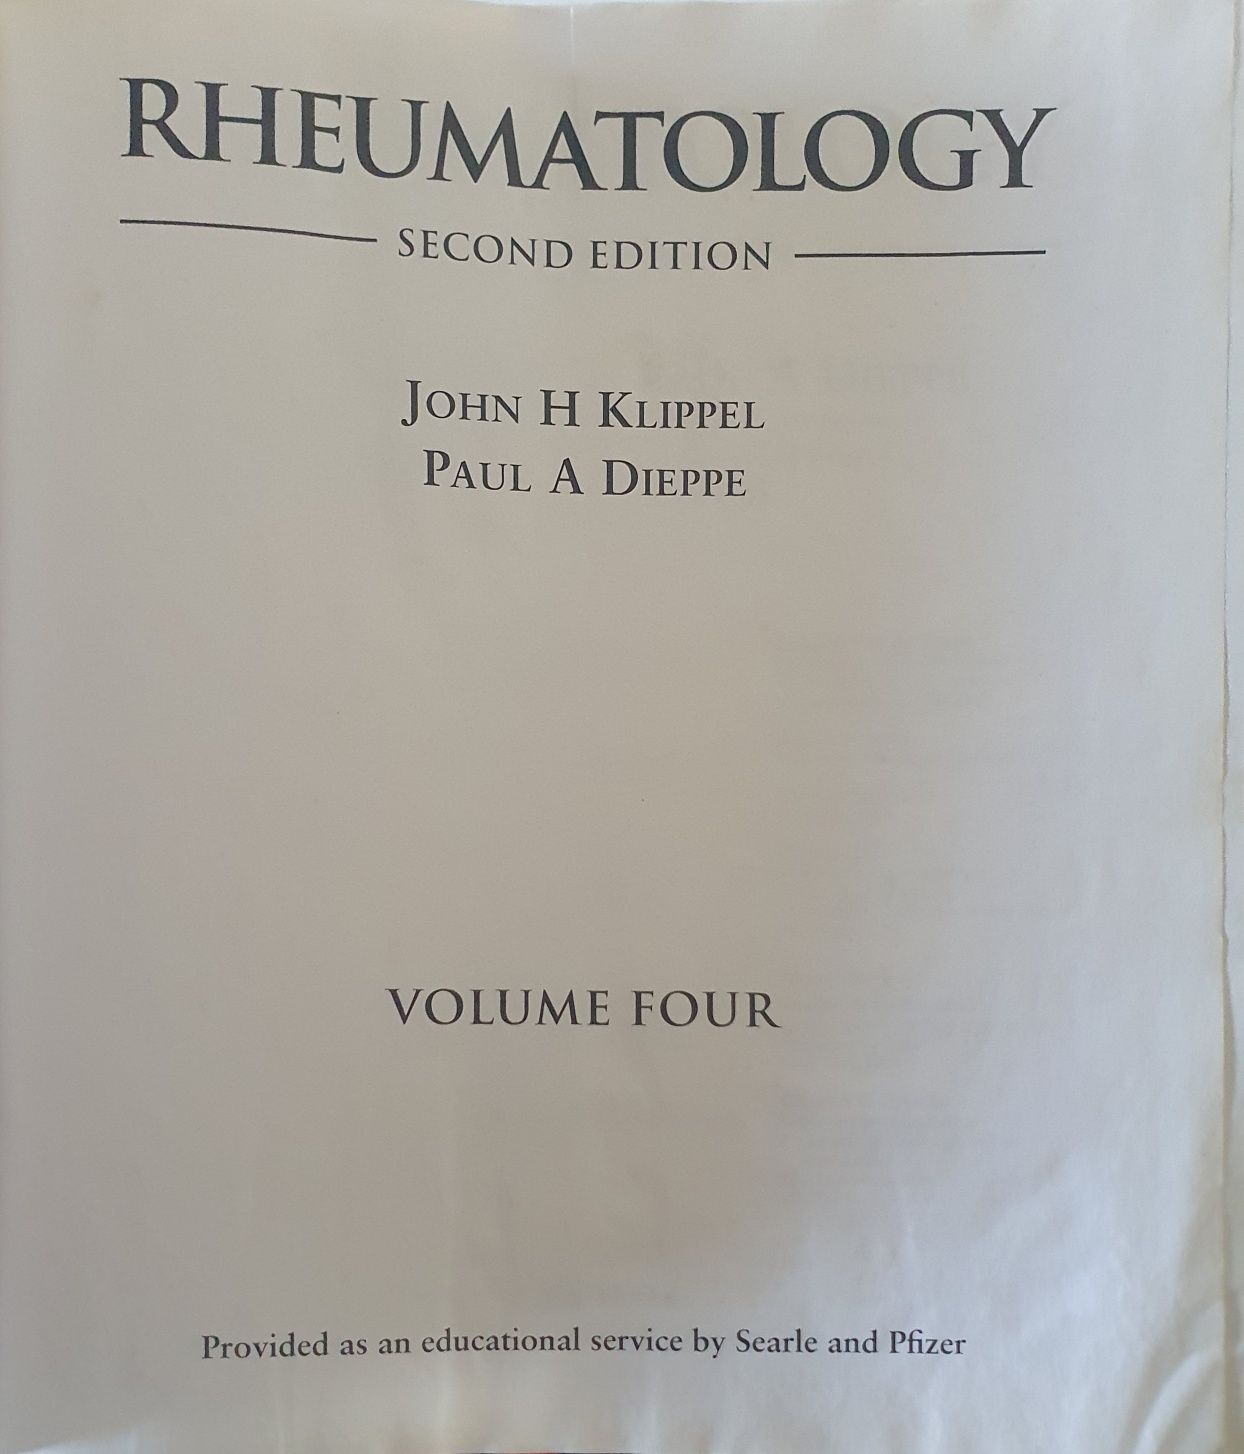 Rheumatology second editon